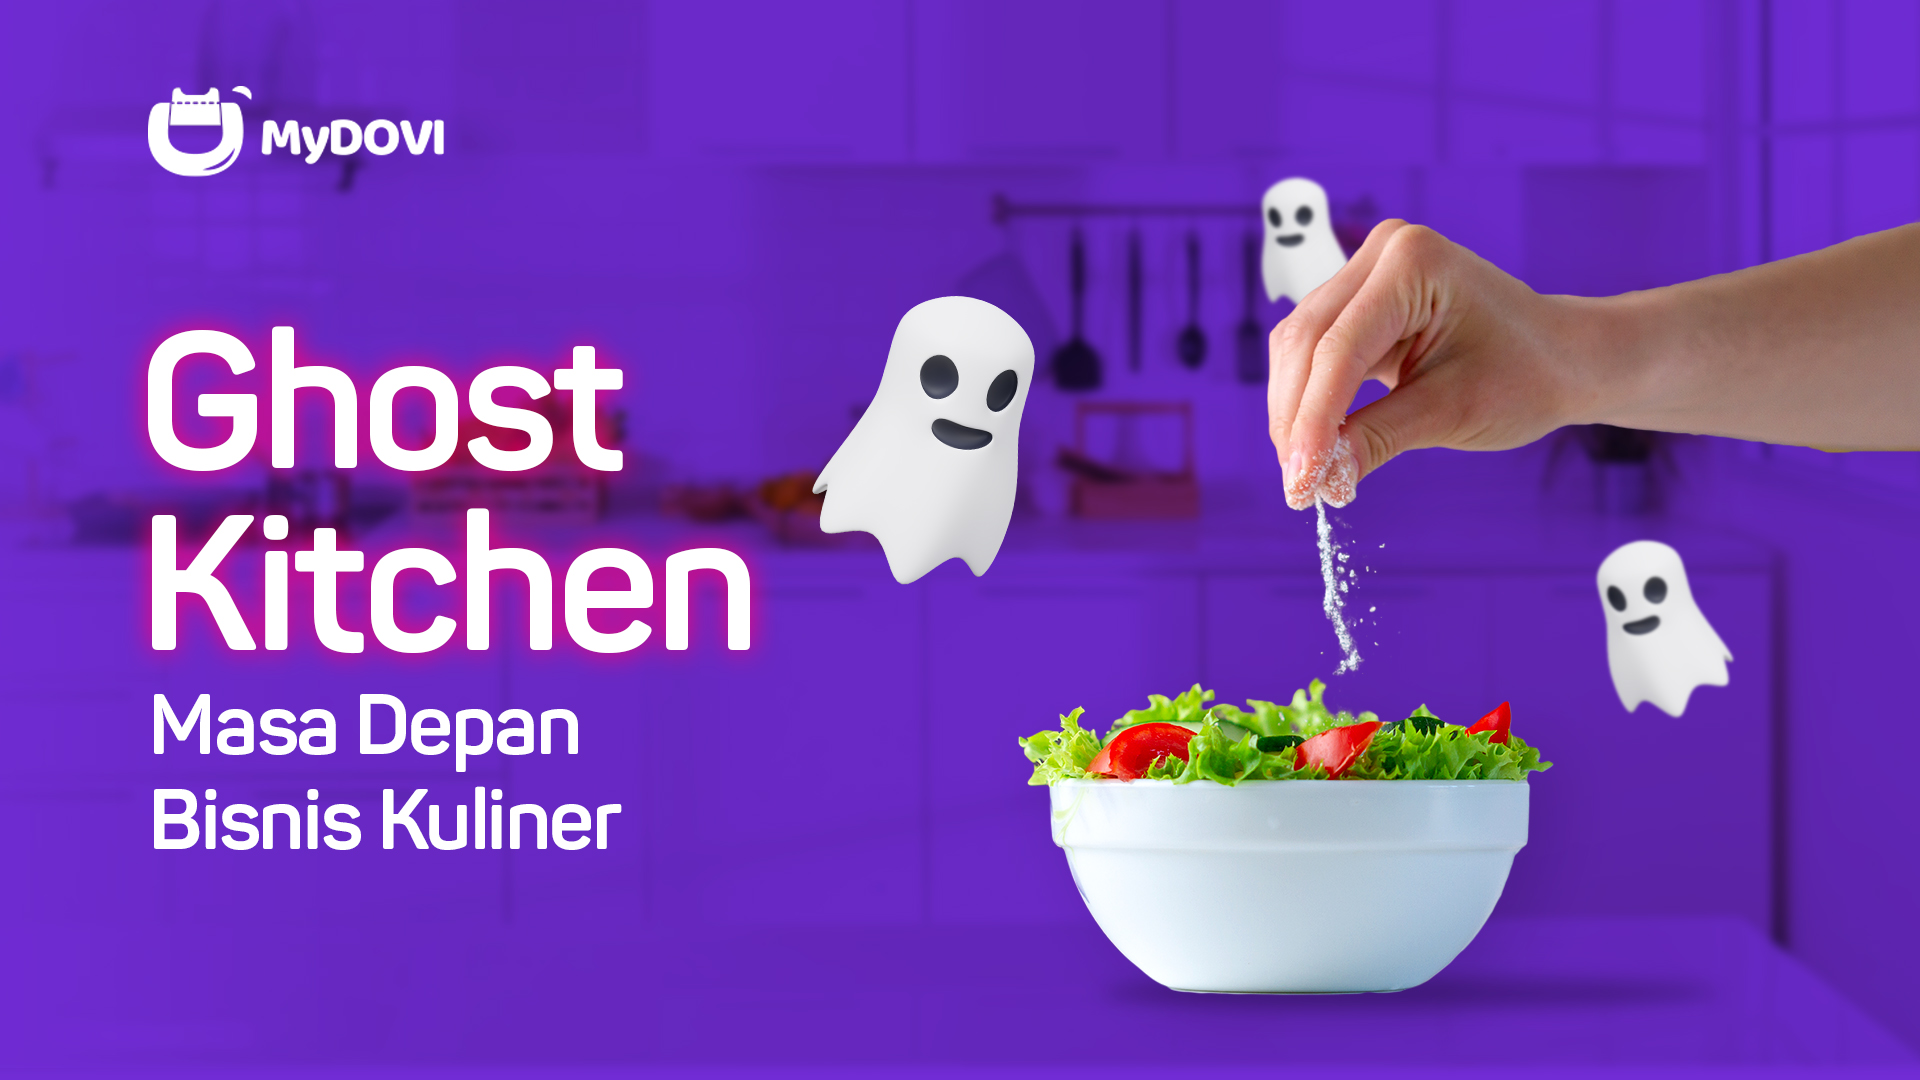 Ghost Kitchen, Masa Depan dari Bisnis Kuliner